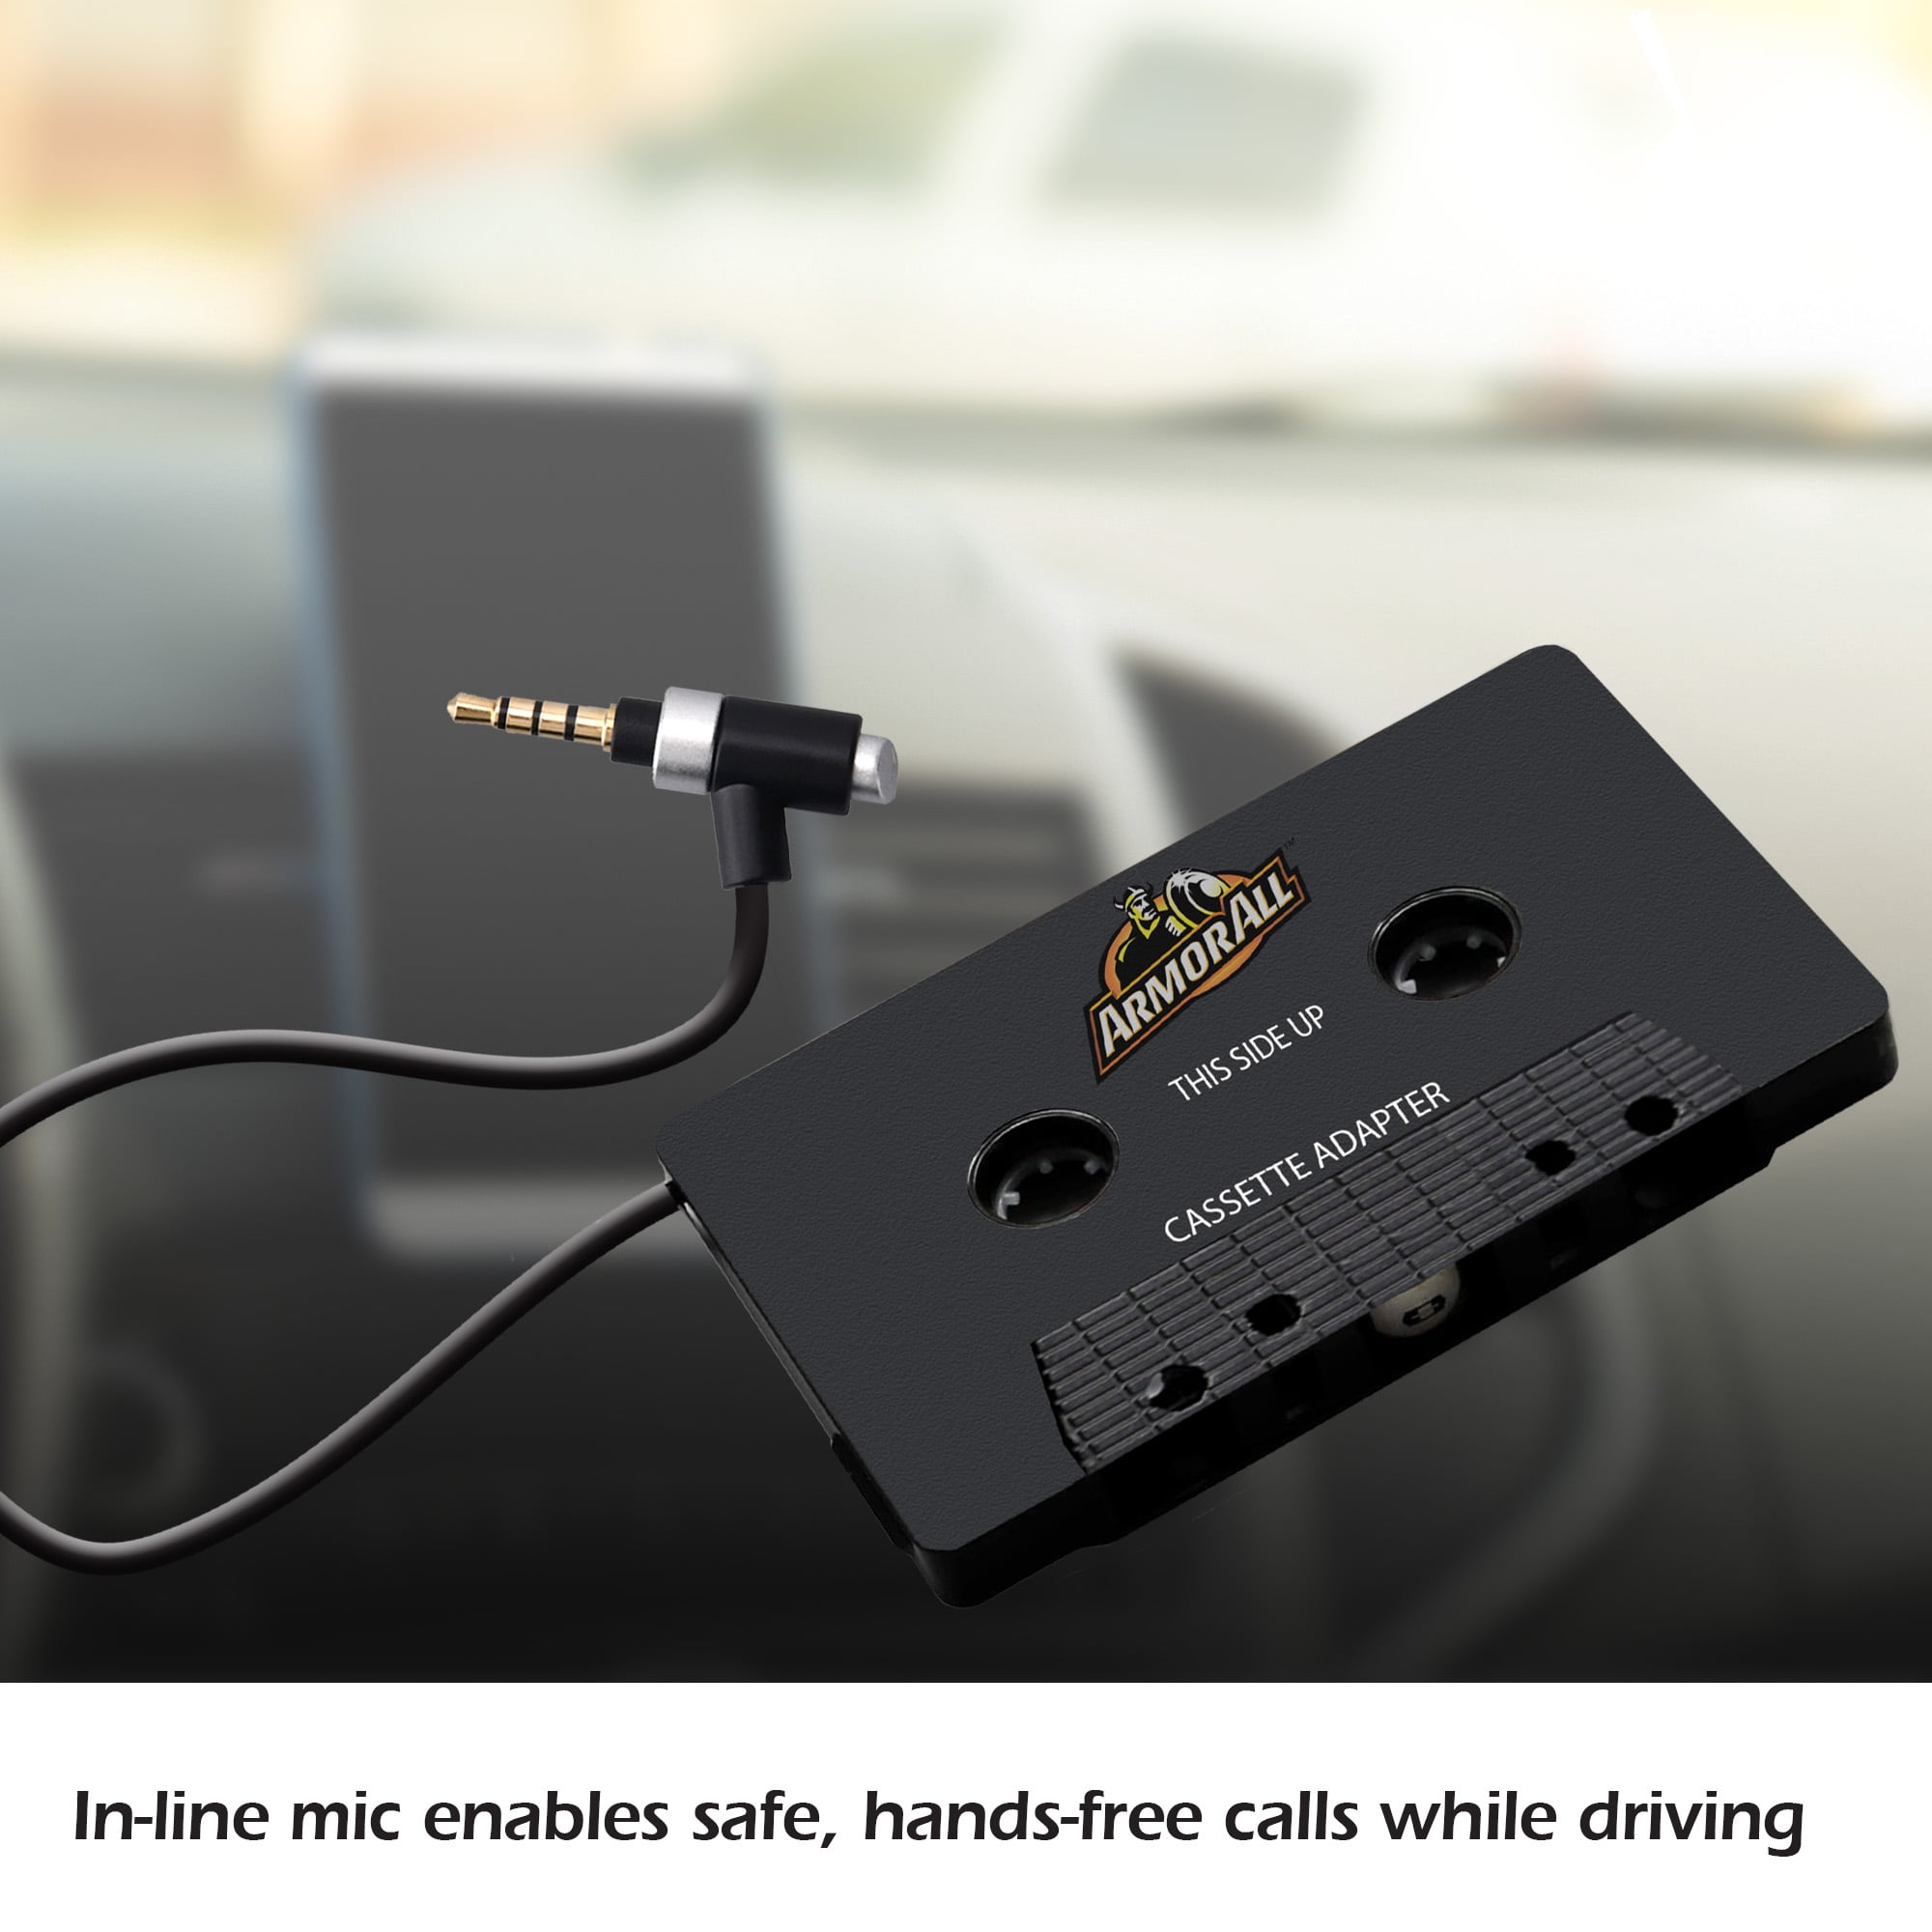 Adaptateur cassette audio - Équipement auto